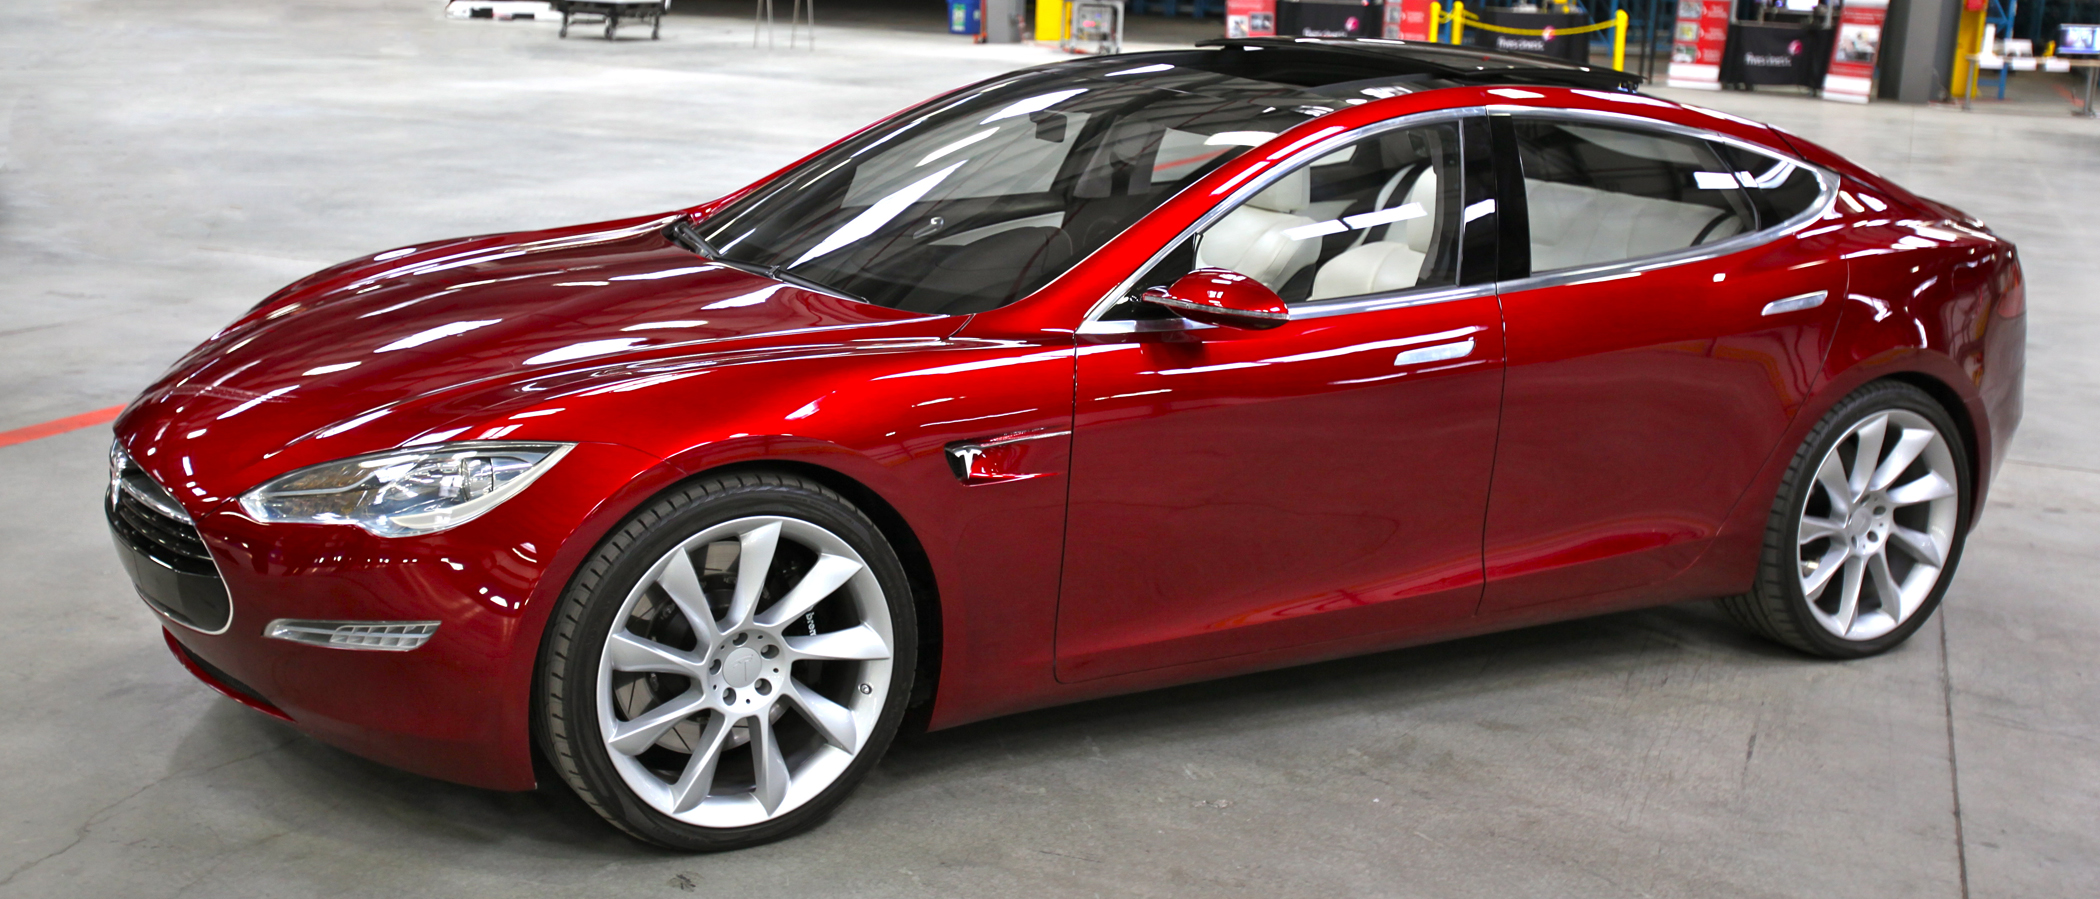 800 német Tesla S-tulajdonosnak kell visszafizetnie az elektromos autójuk után járó 4000 eurós kedvezményt